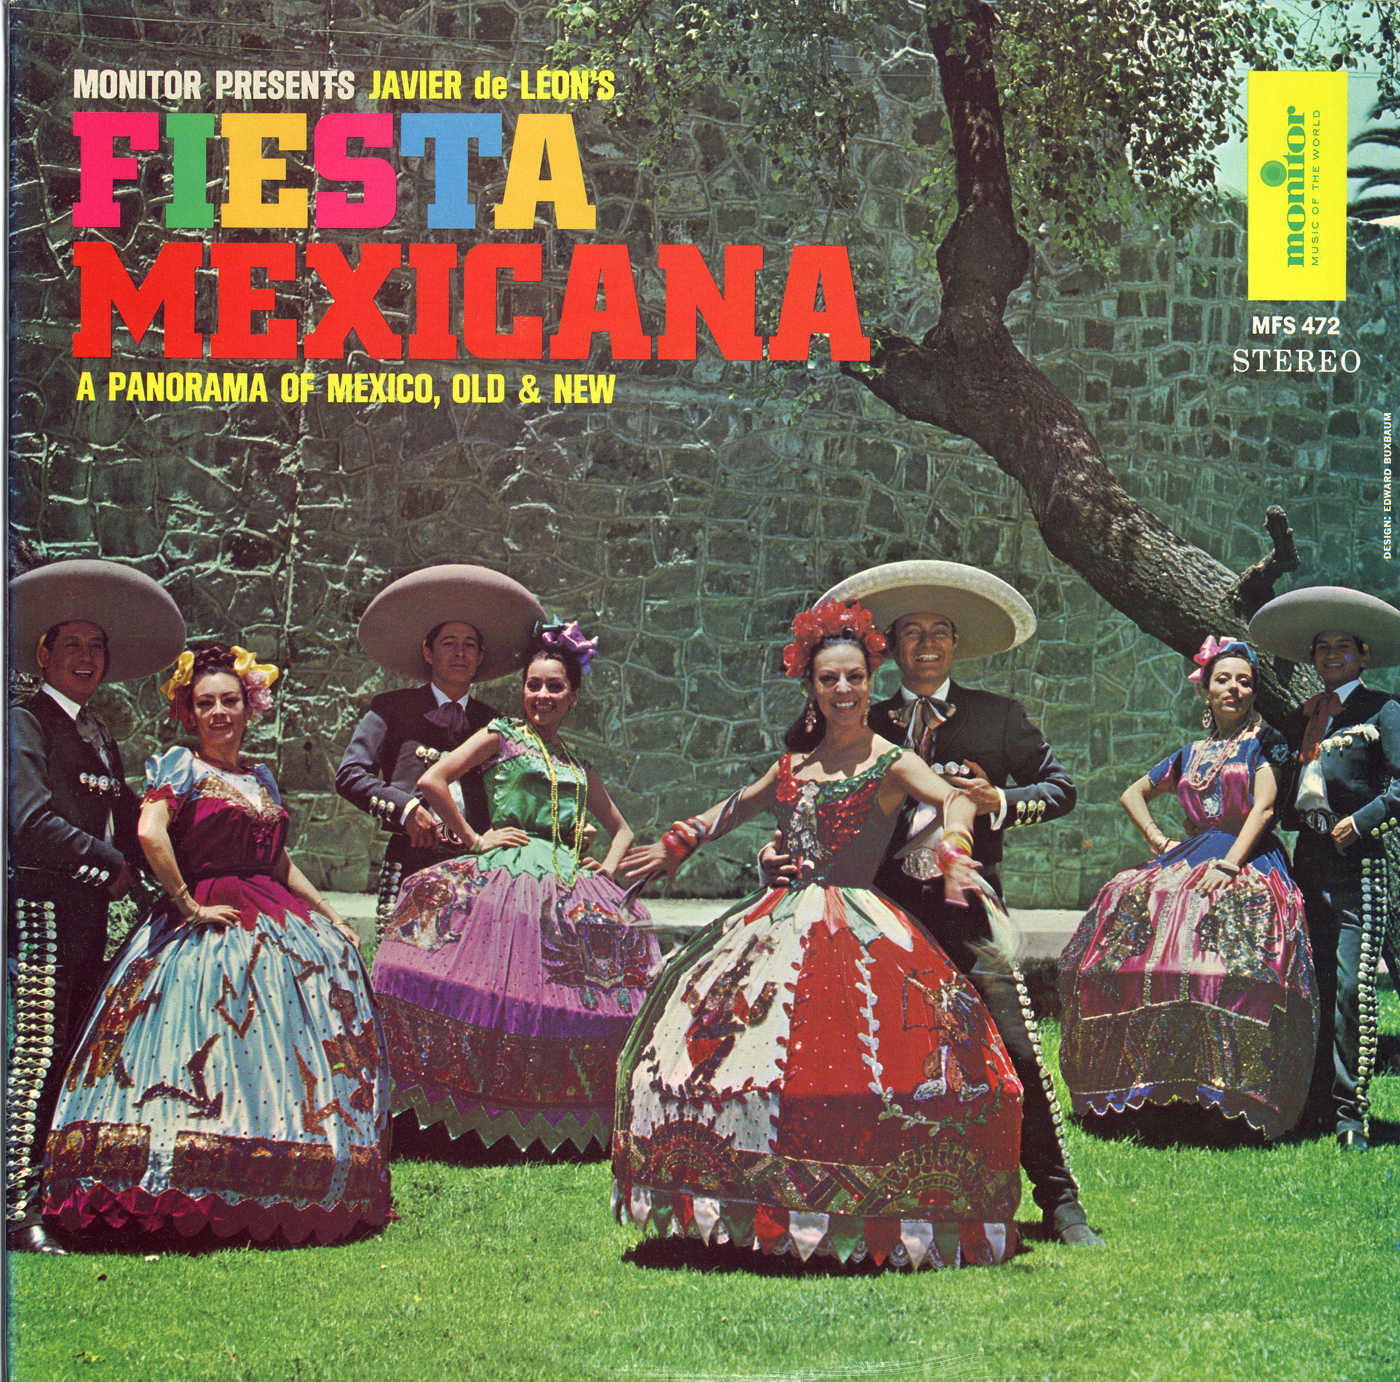 Aged Mexicana